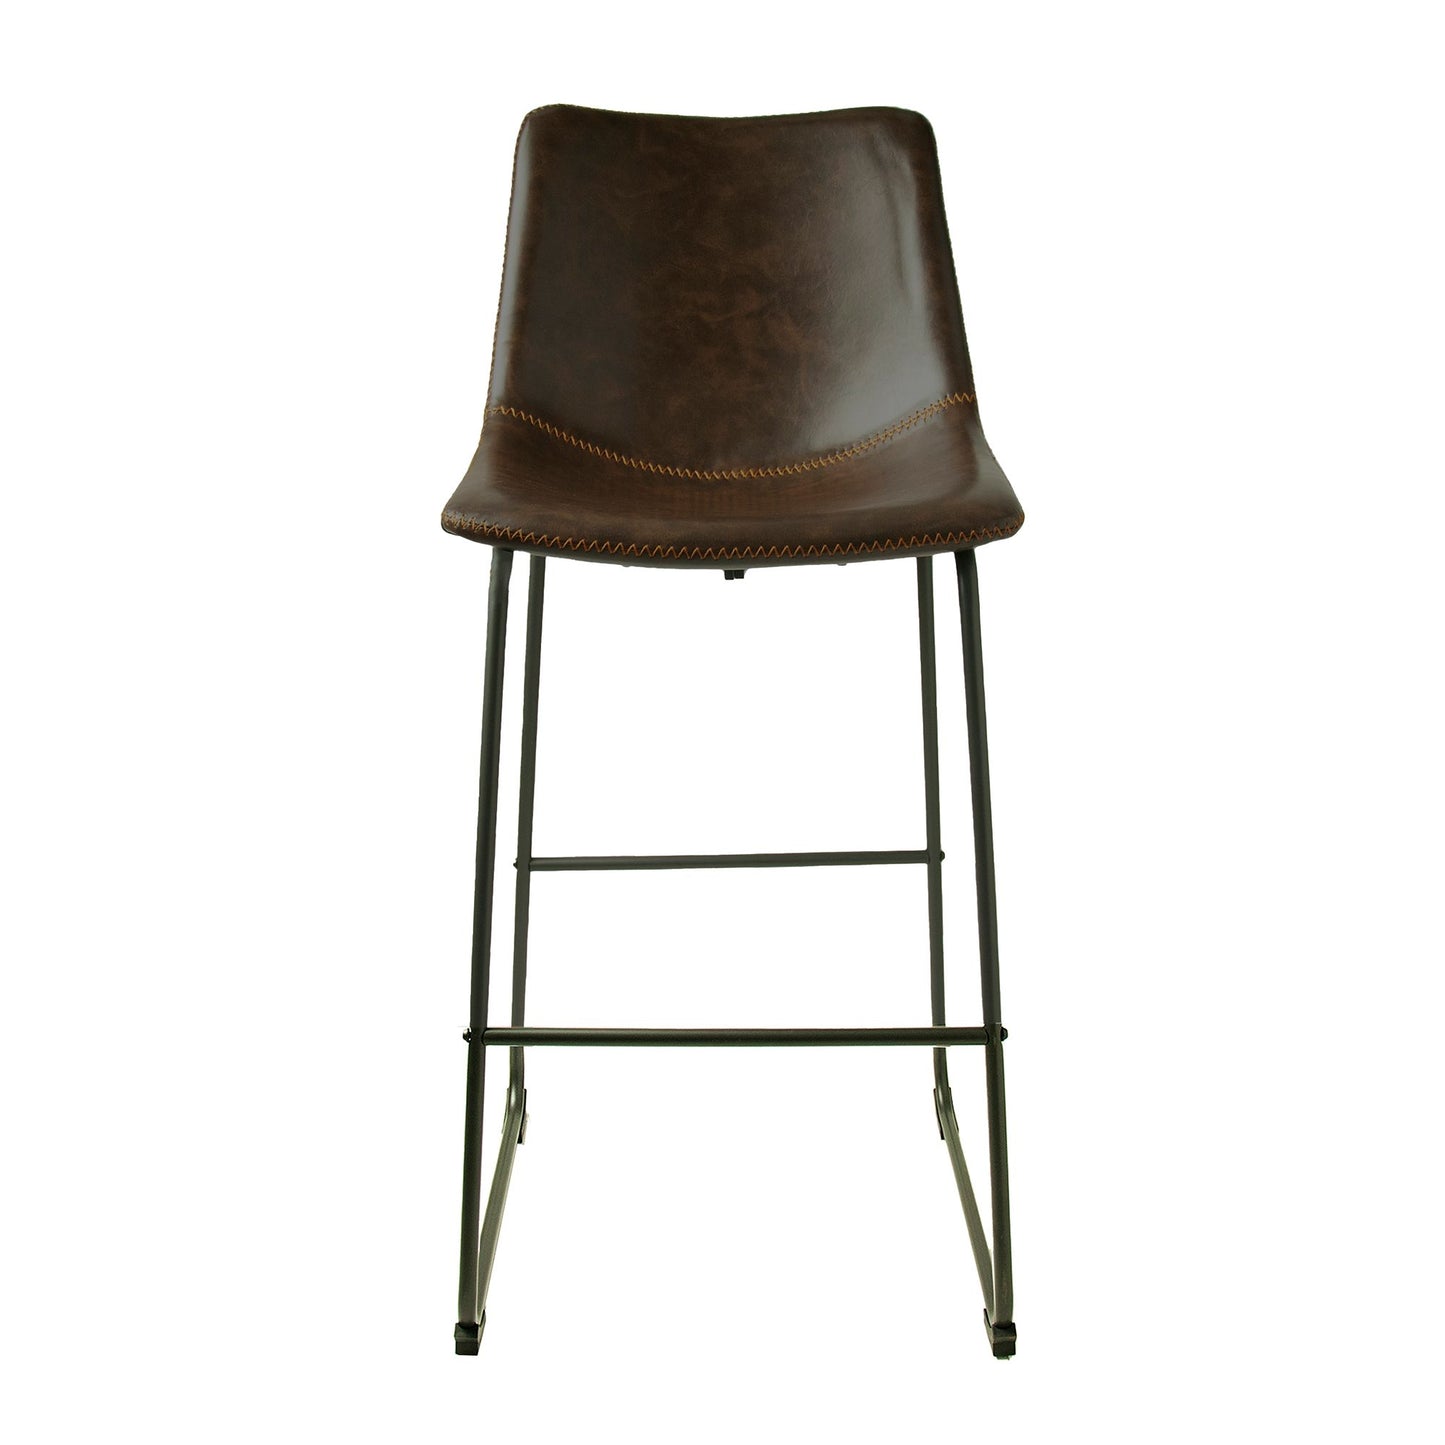 Pair of Cooper chestnut bar stools